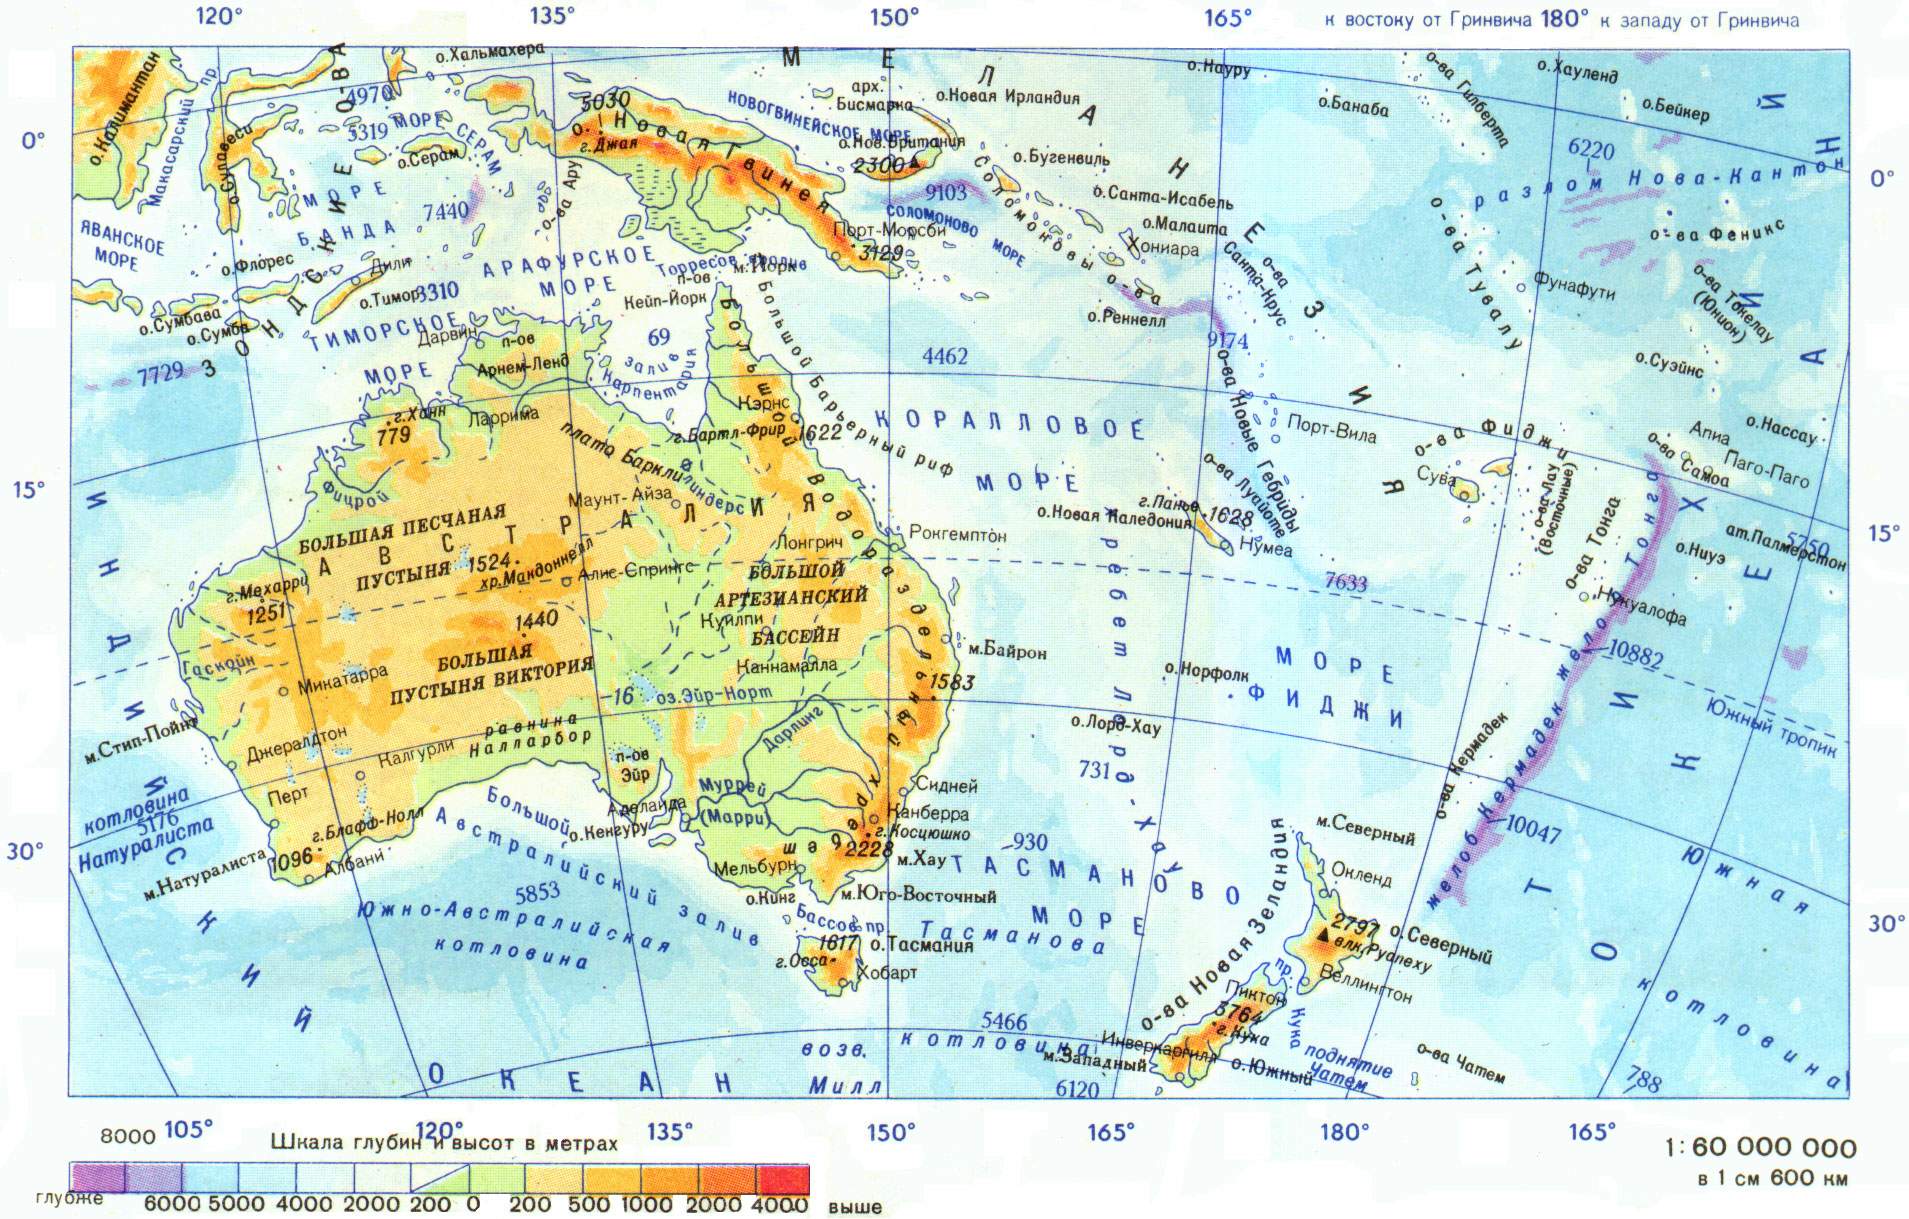 Практическая часть специального семинара Методическая разработка интегрированного урока географии в 8 классе коррекционной школы VIII вида по теме: «Австралия».